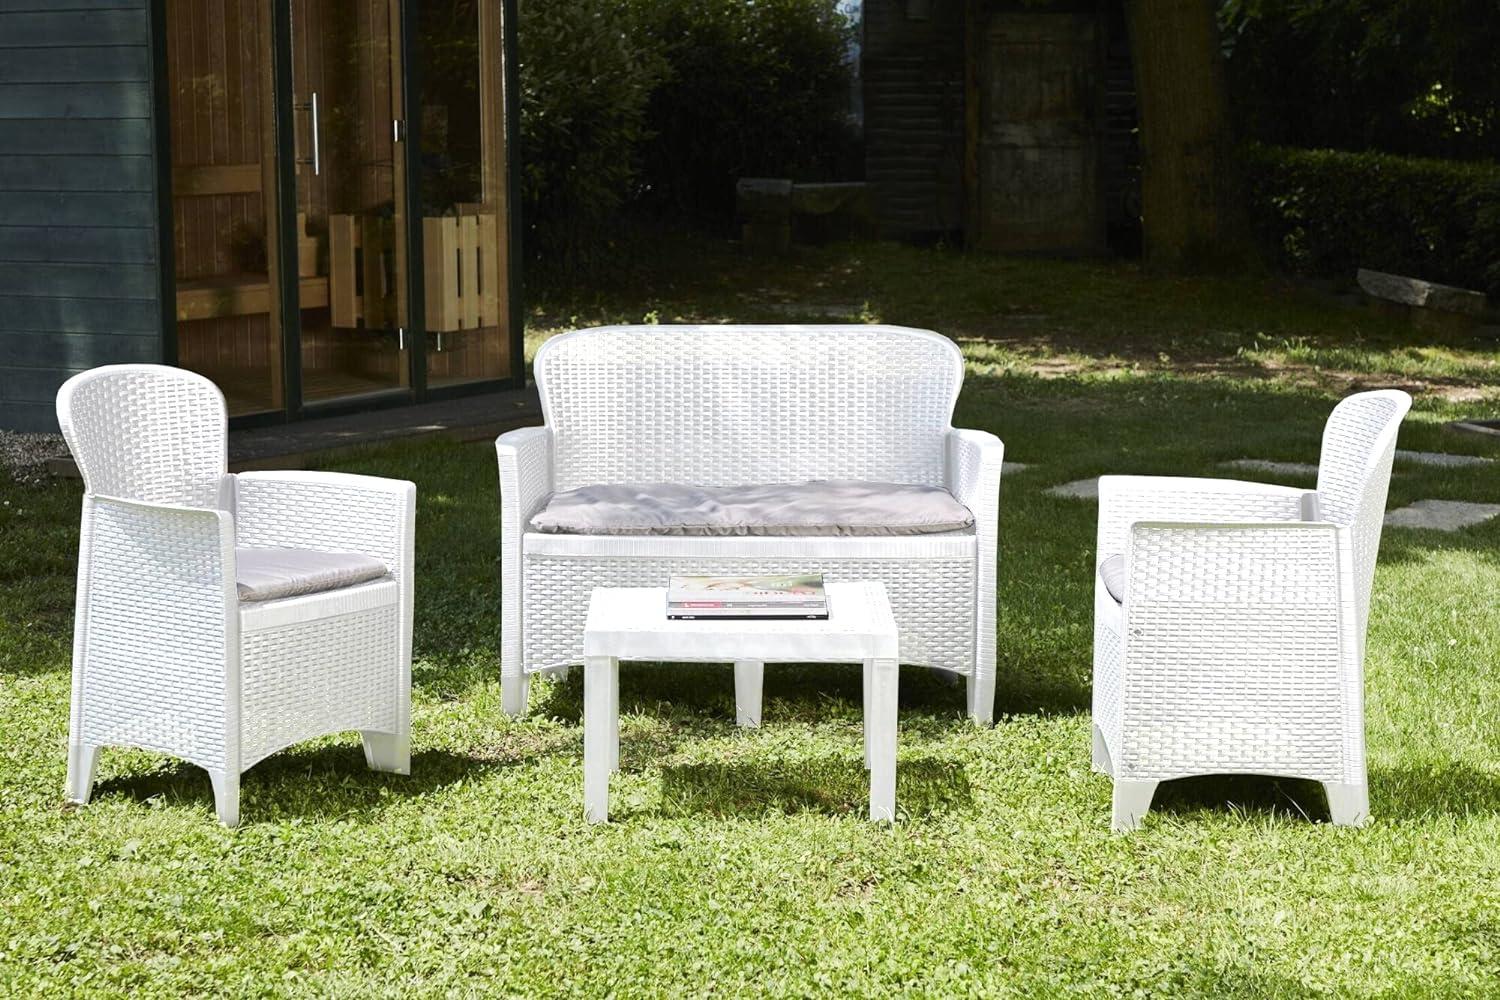 Dmora - Outdoor-Lounge-Set Ostuni, Gartengarnitur mit 2 Sesseln, 1 Sofa und 1 Couchtisch, Sitzecke in Rattan-Optik mit Kissen, 100% Made in Italy, Weiß Bild 1